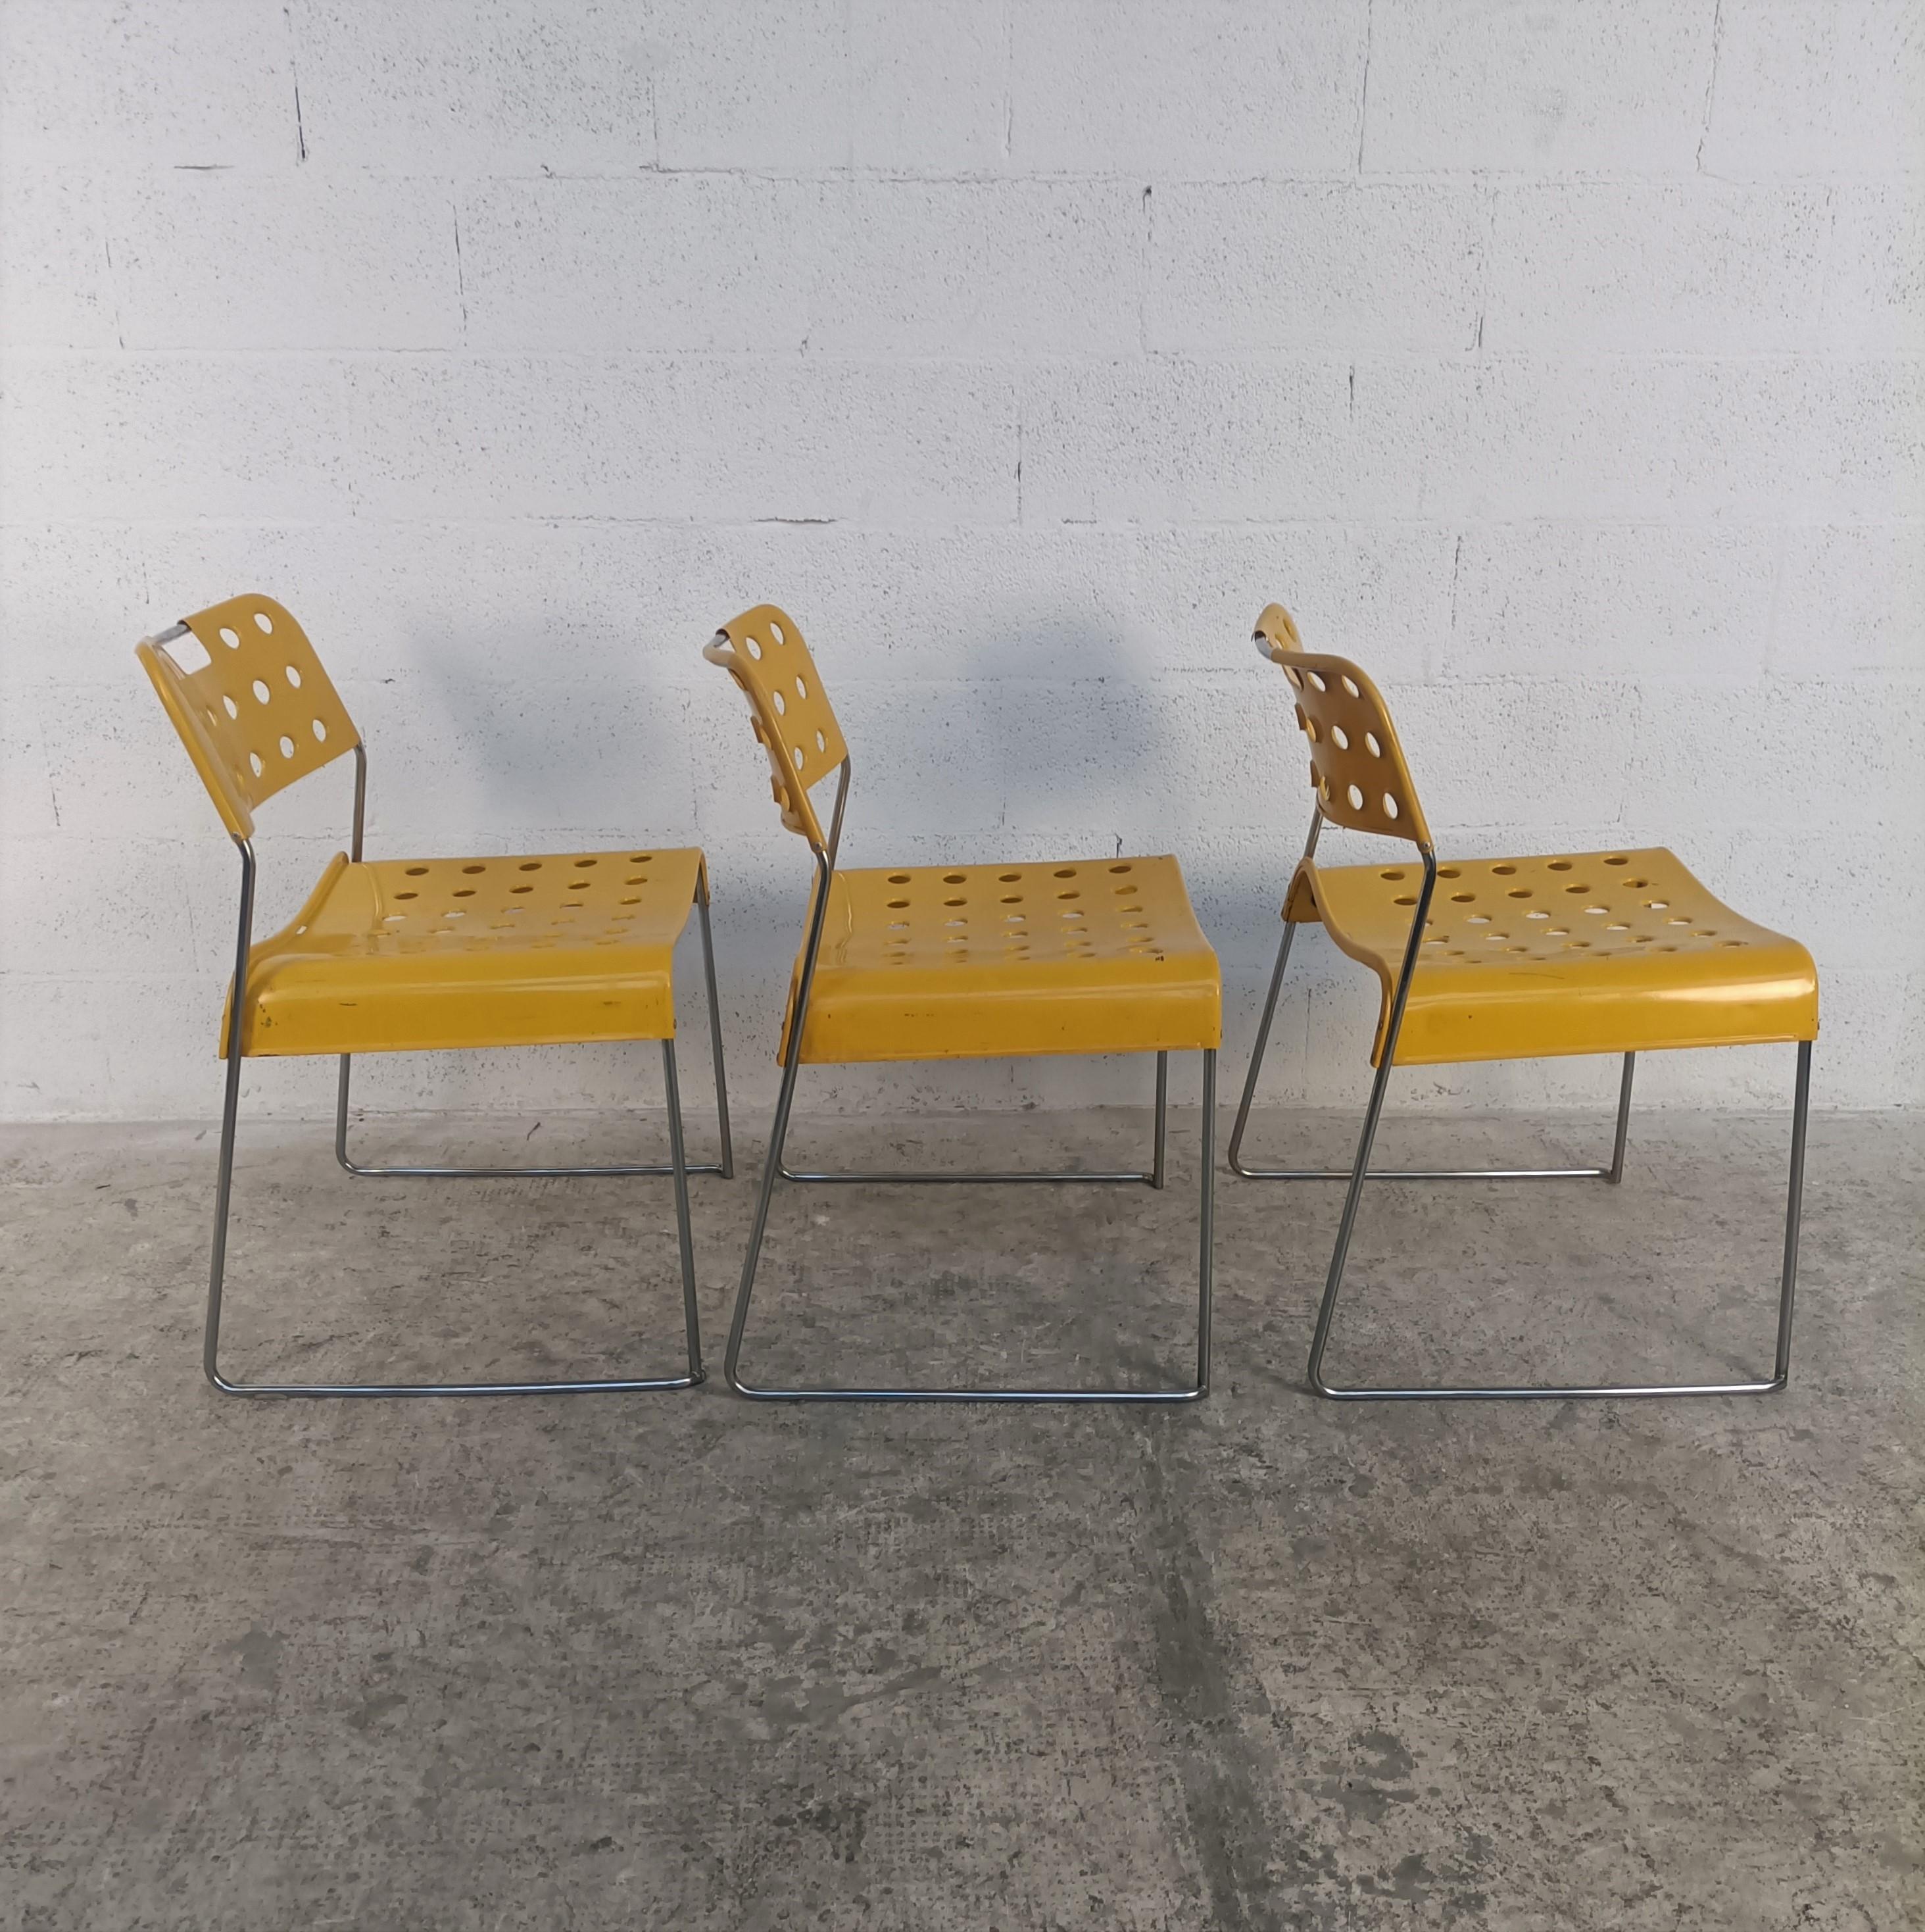 3 Chaises à manger en métal modèle Omkstak conçues par Rodney Kinsman et produites par Bieffeplast 1970.
Structure en acier tubulaire chromé, assise et dossier en tôle d'acier moulée et revêtue de résine époxy jaune. Les détails perforés rendent la